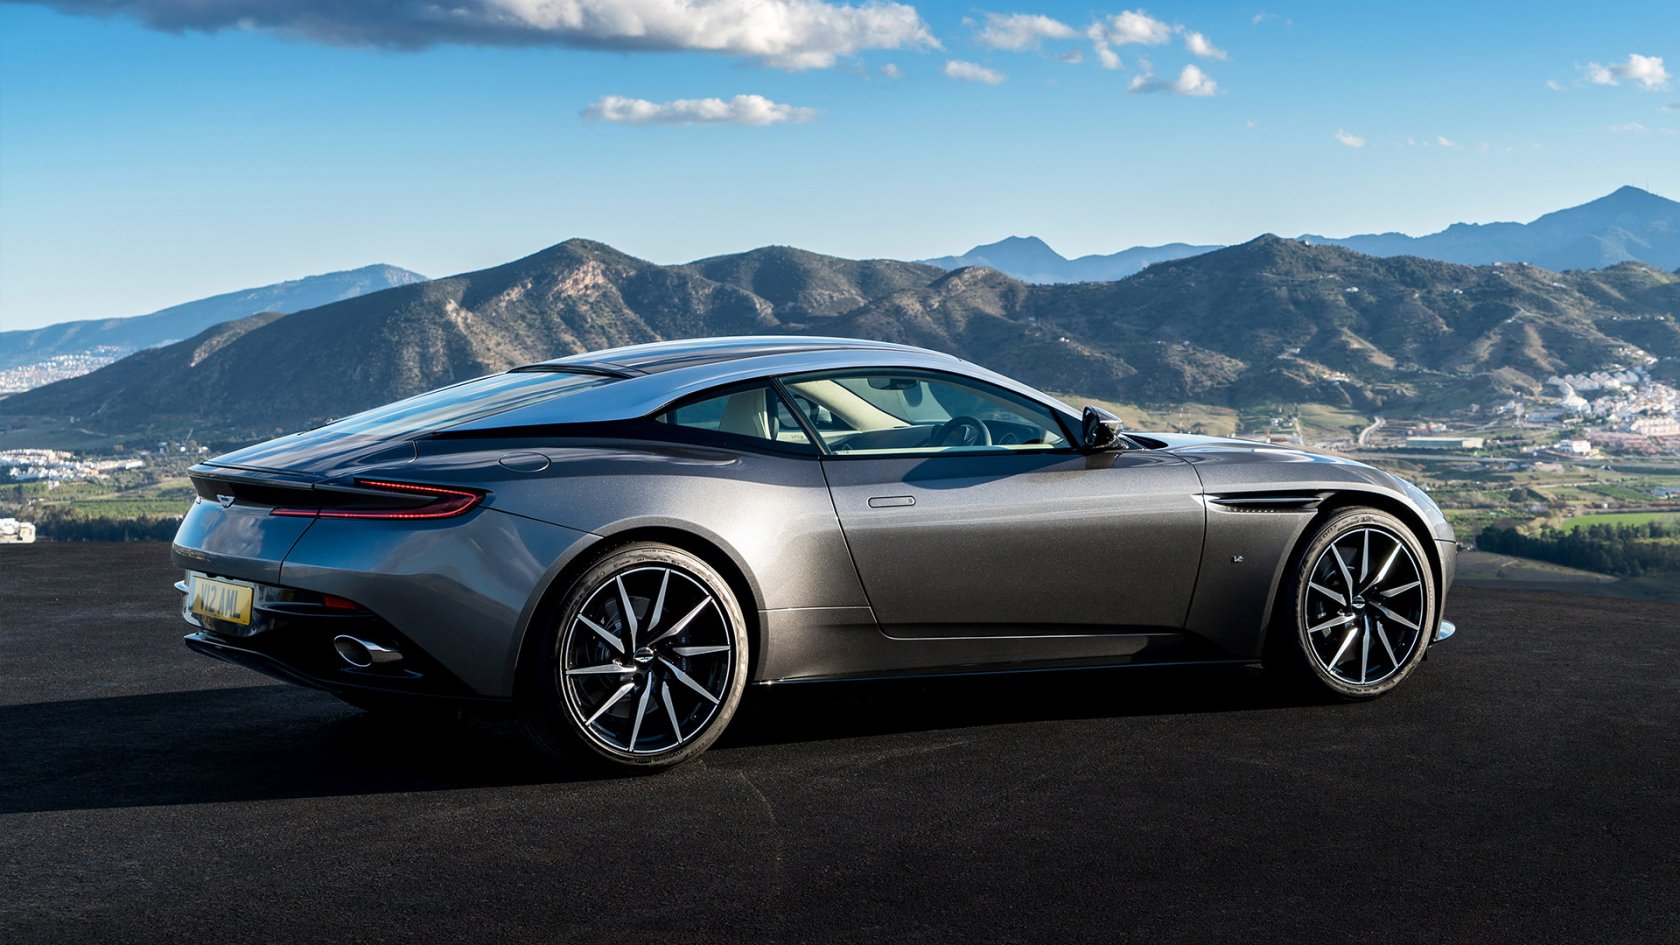 Spectre': Jay Leno Drives Aston Martin DB10